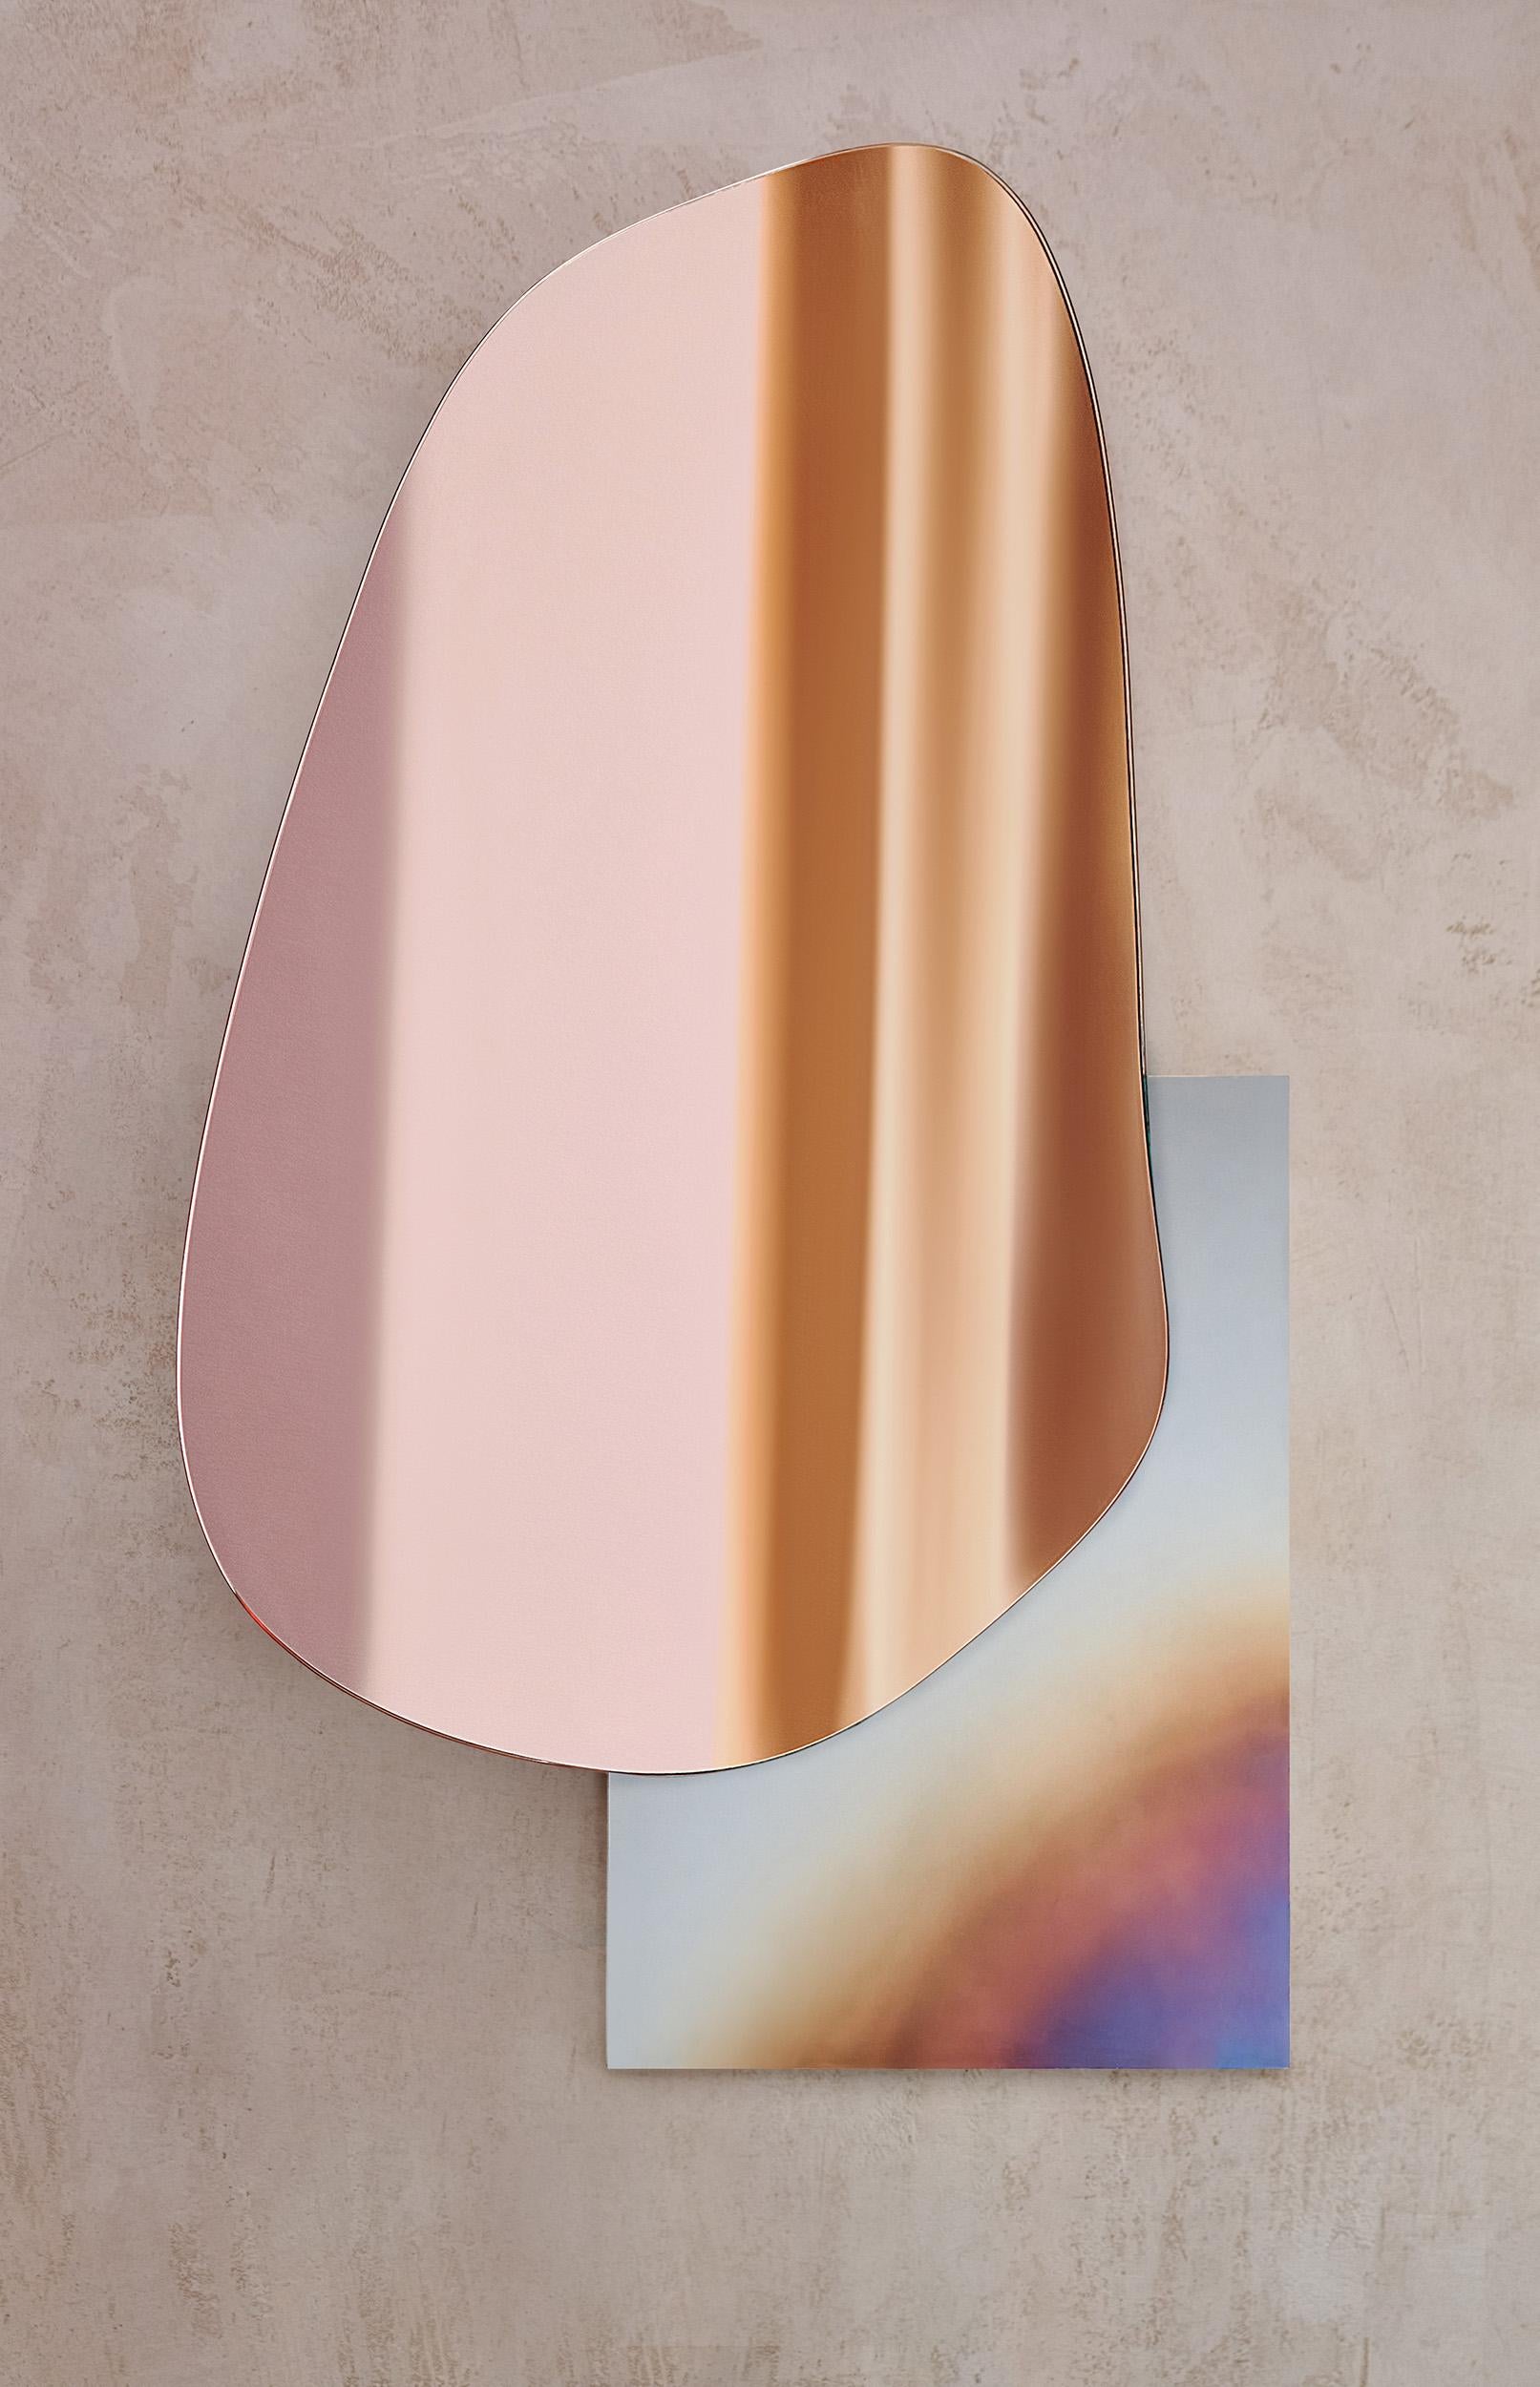 Miroir mural moderne en forme de lac par NOOM
Designers : Maryna Dague & Nathan Baraness

Modèle présenté dans l'image :
Numéro 3
Base en acier brûlé et miroir teinté cuivre.

